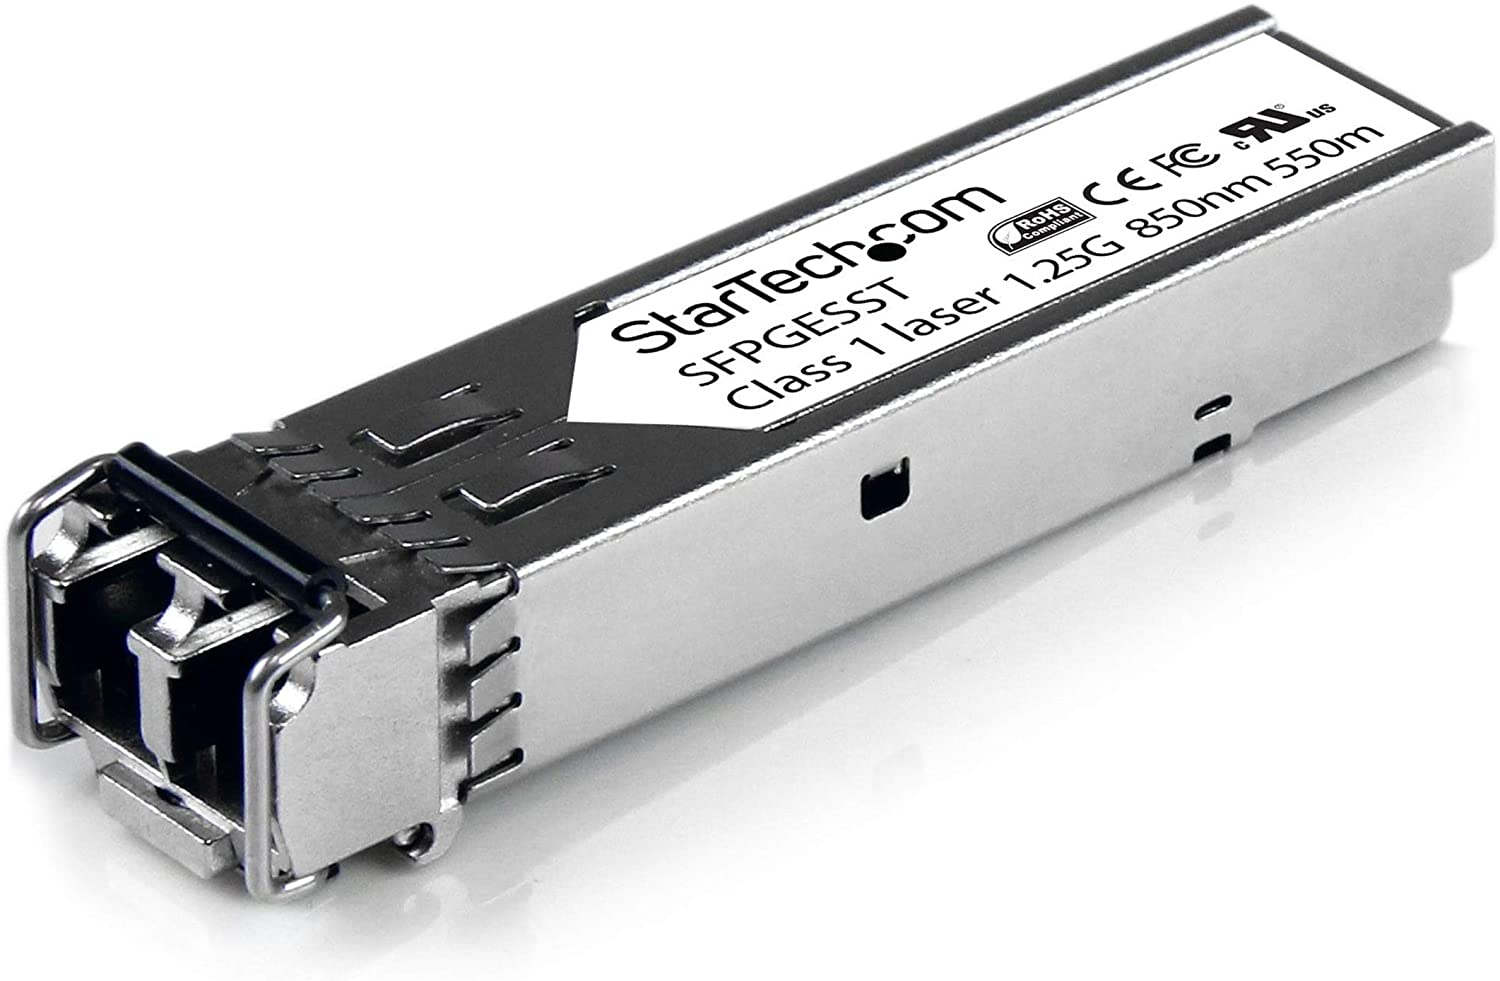 StarTech.com SFPGESST GB Fibre SFP Transceiver mm LC